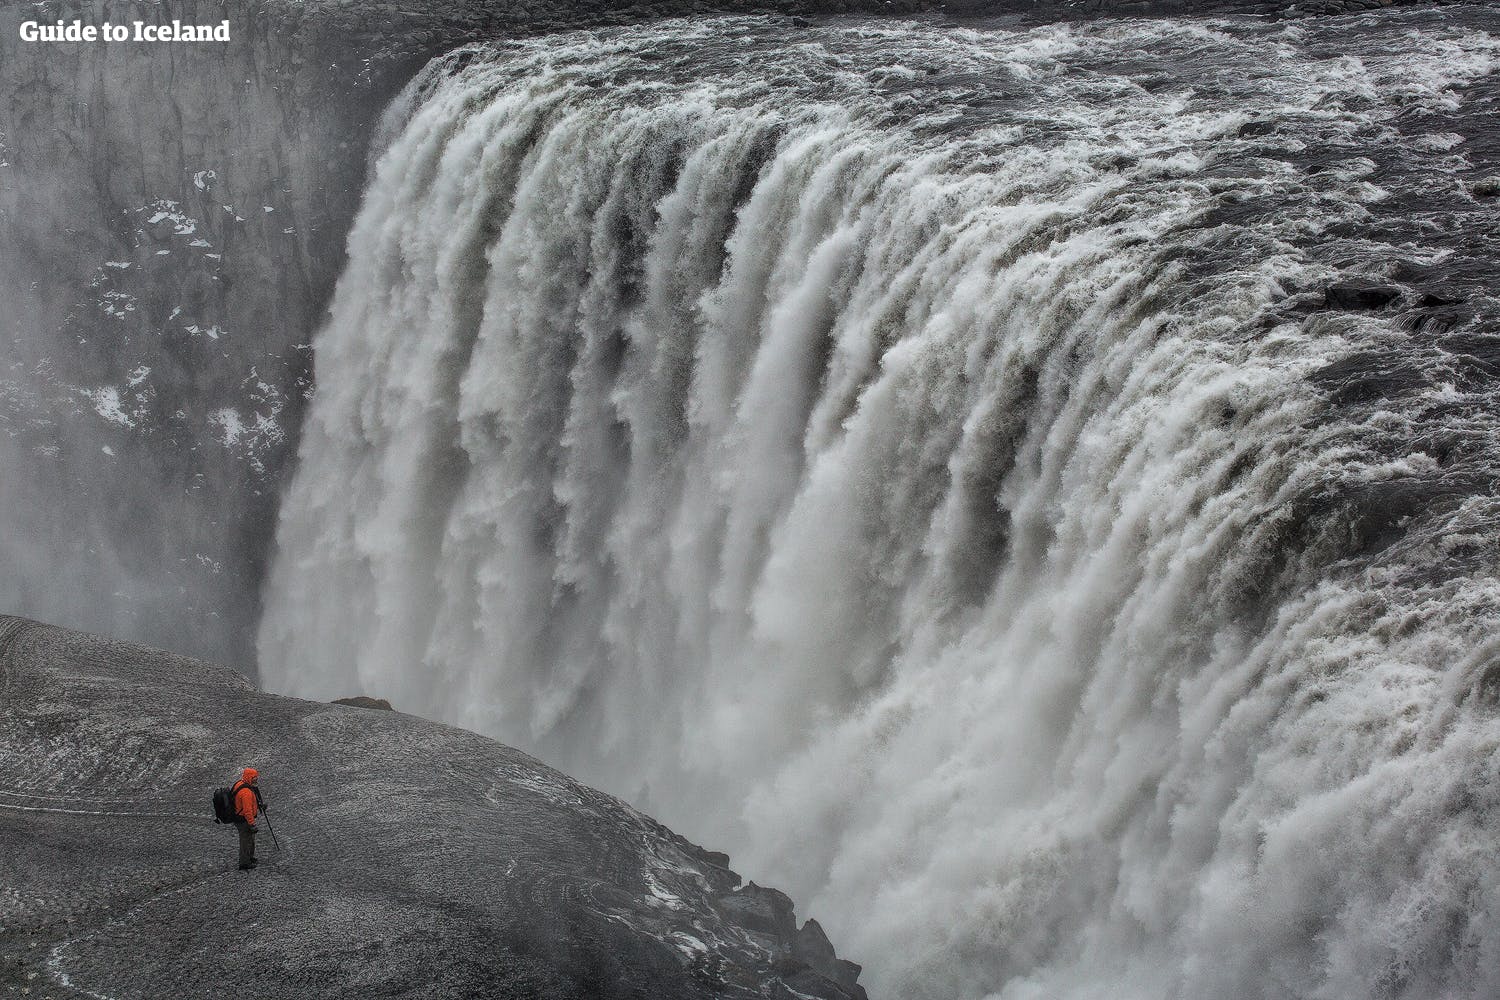 Najpotężniejszy wodospad Europy, Dettifoss, w północnej Islandii.